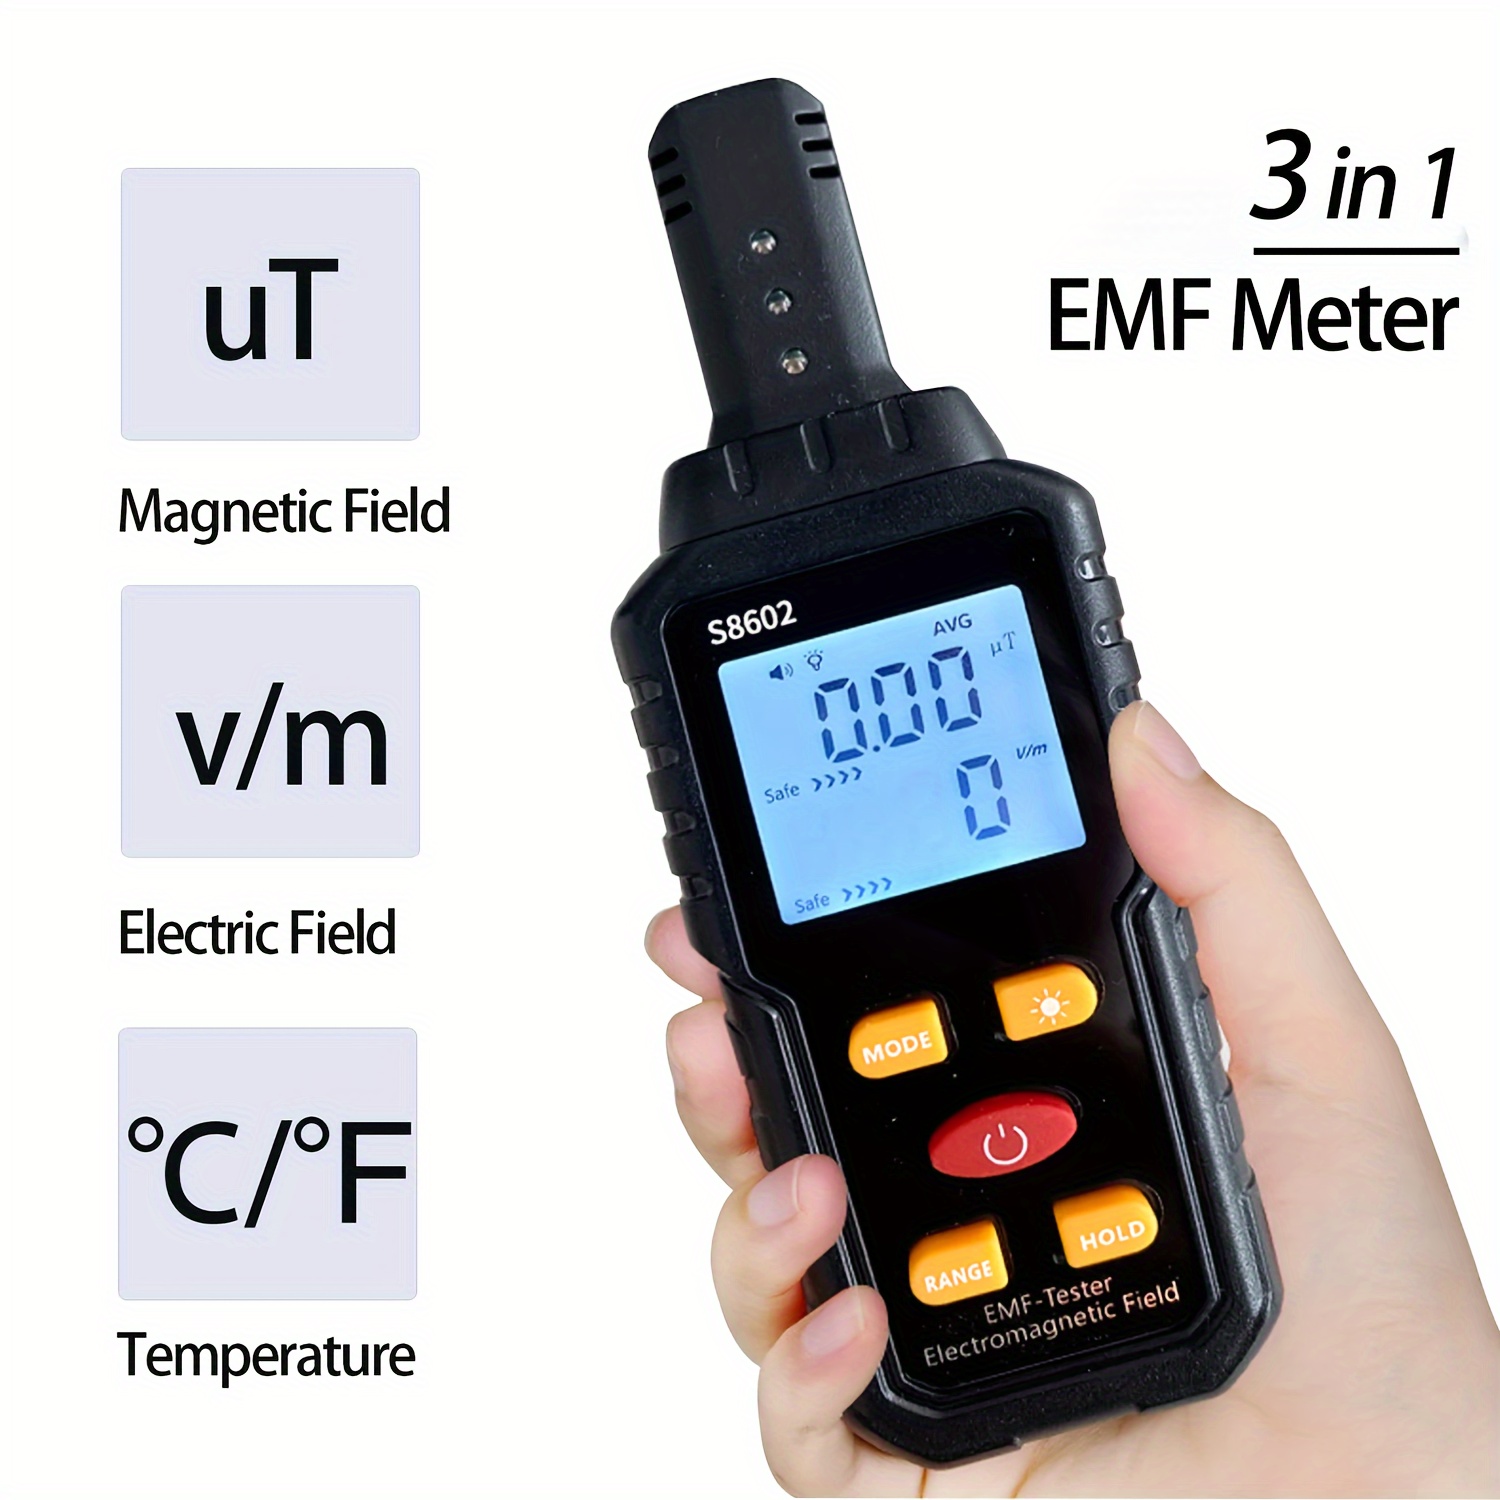 

3 In 1 Emf Meter Electromagnetic Field Detector, Electromagnetic Field Radiation Detector, Household Electromagnetic Field Detector For Home Emf Detector